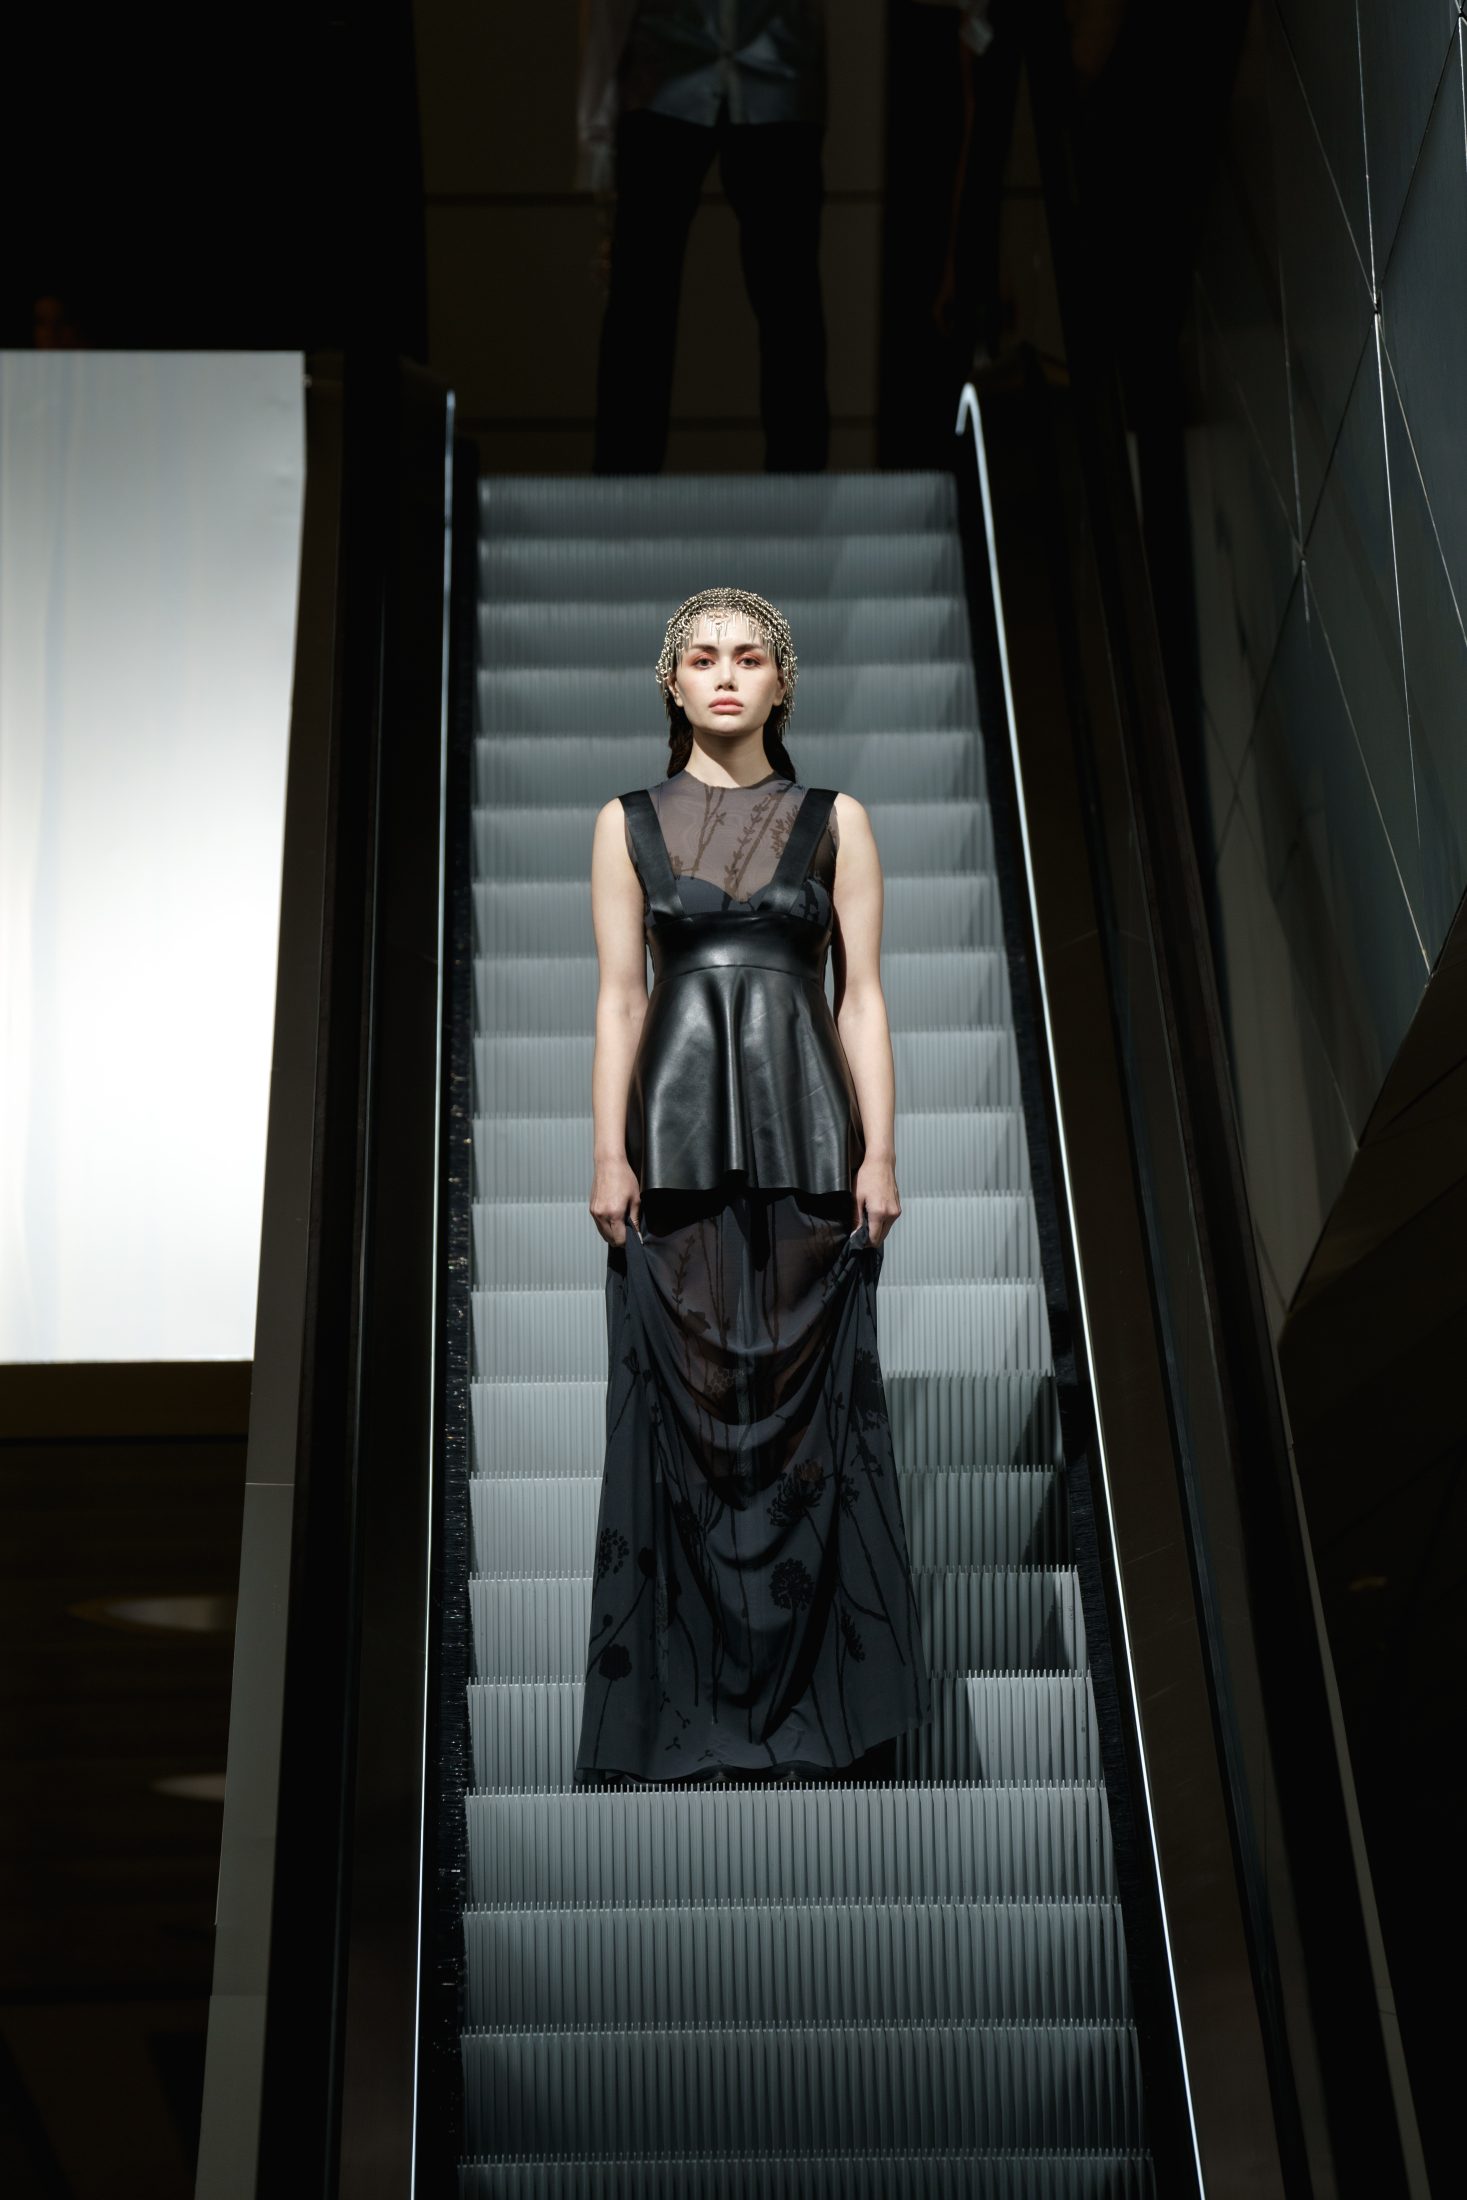 Звезда родилась: азербайджанские бренды на Baku Fashion Week